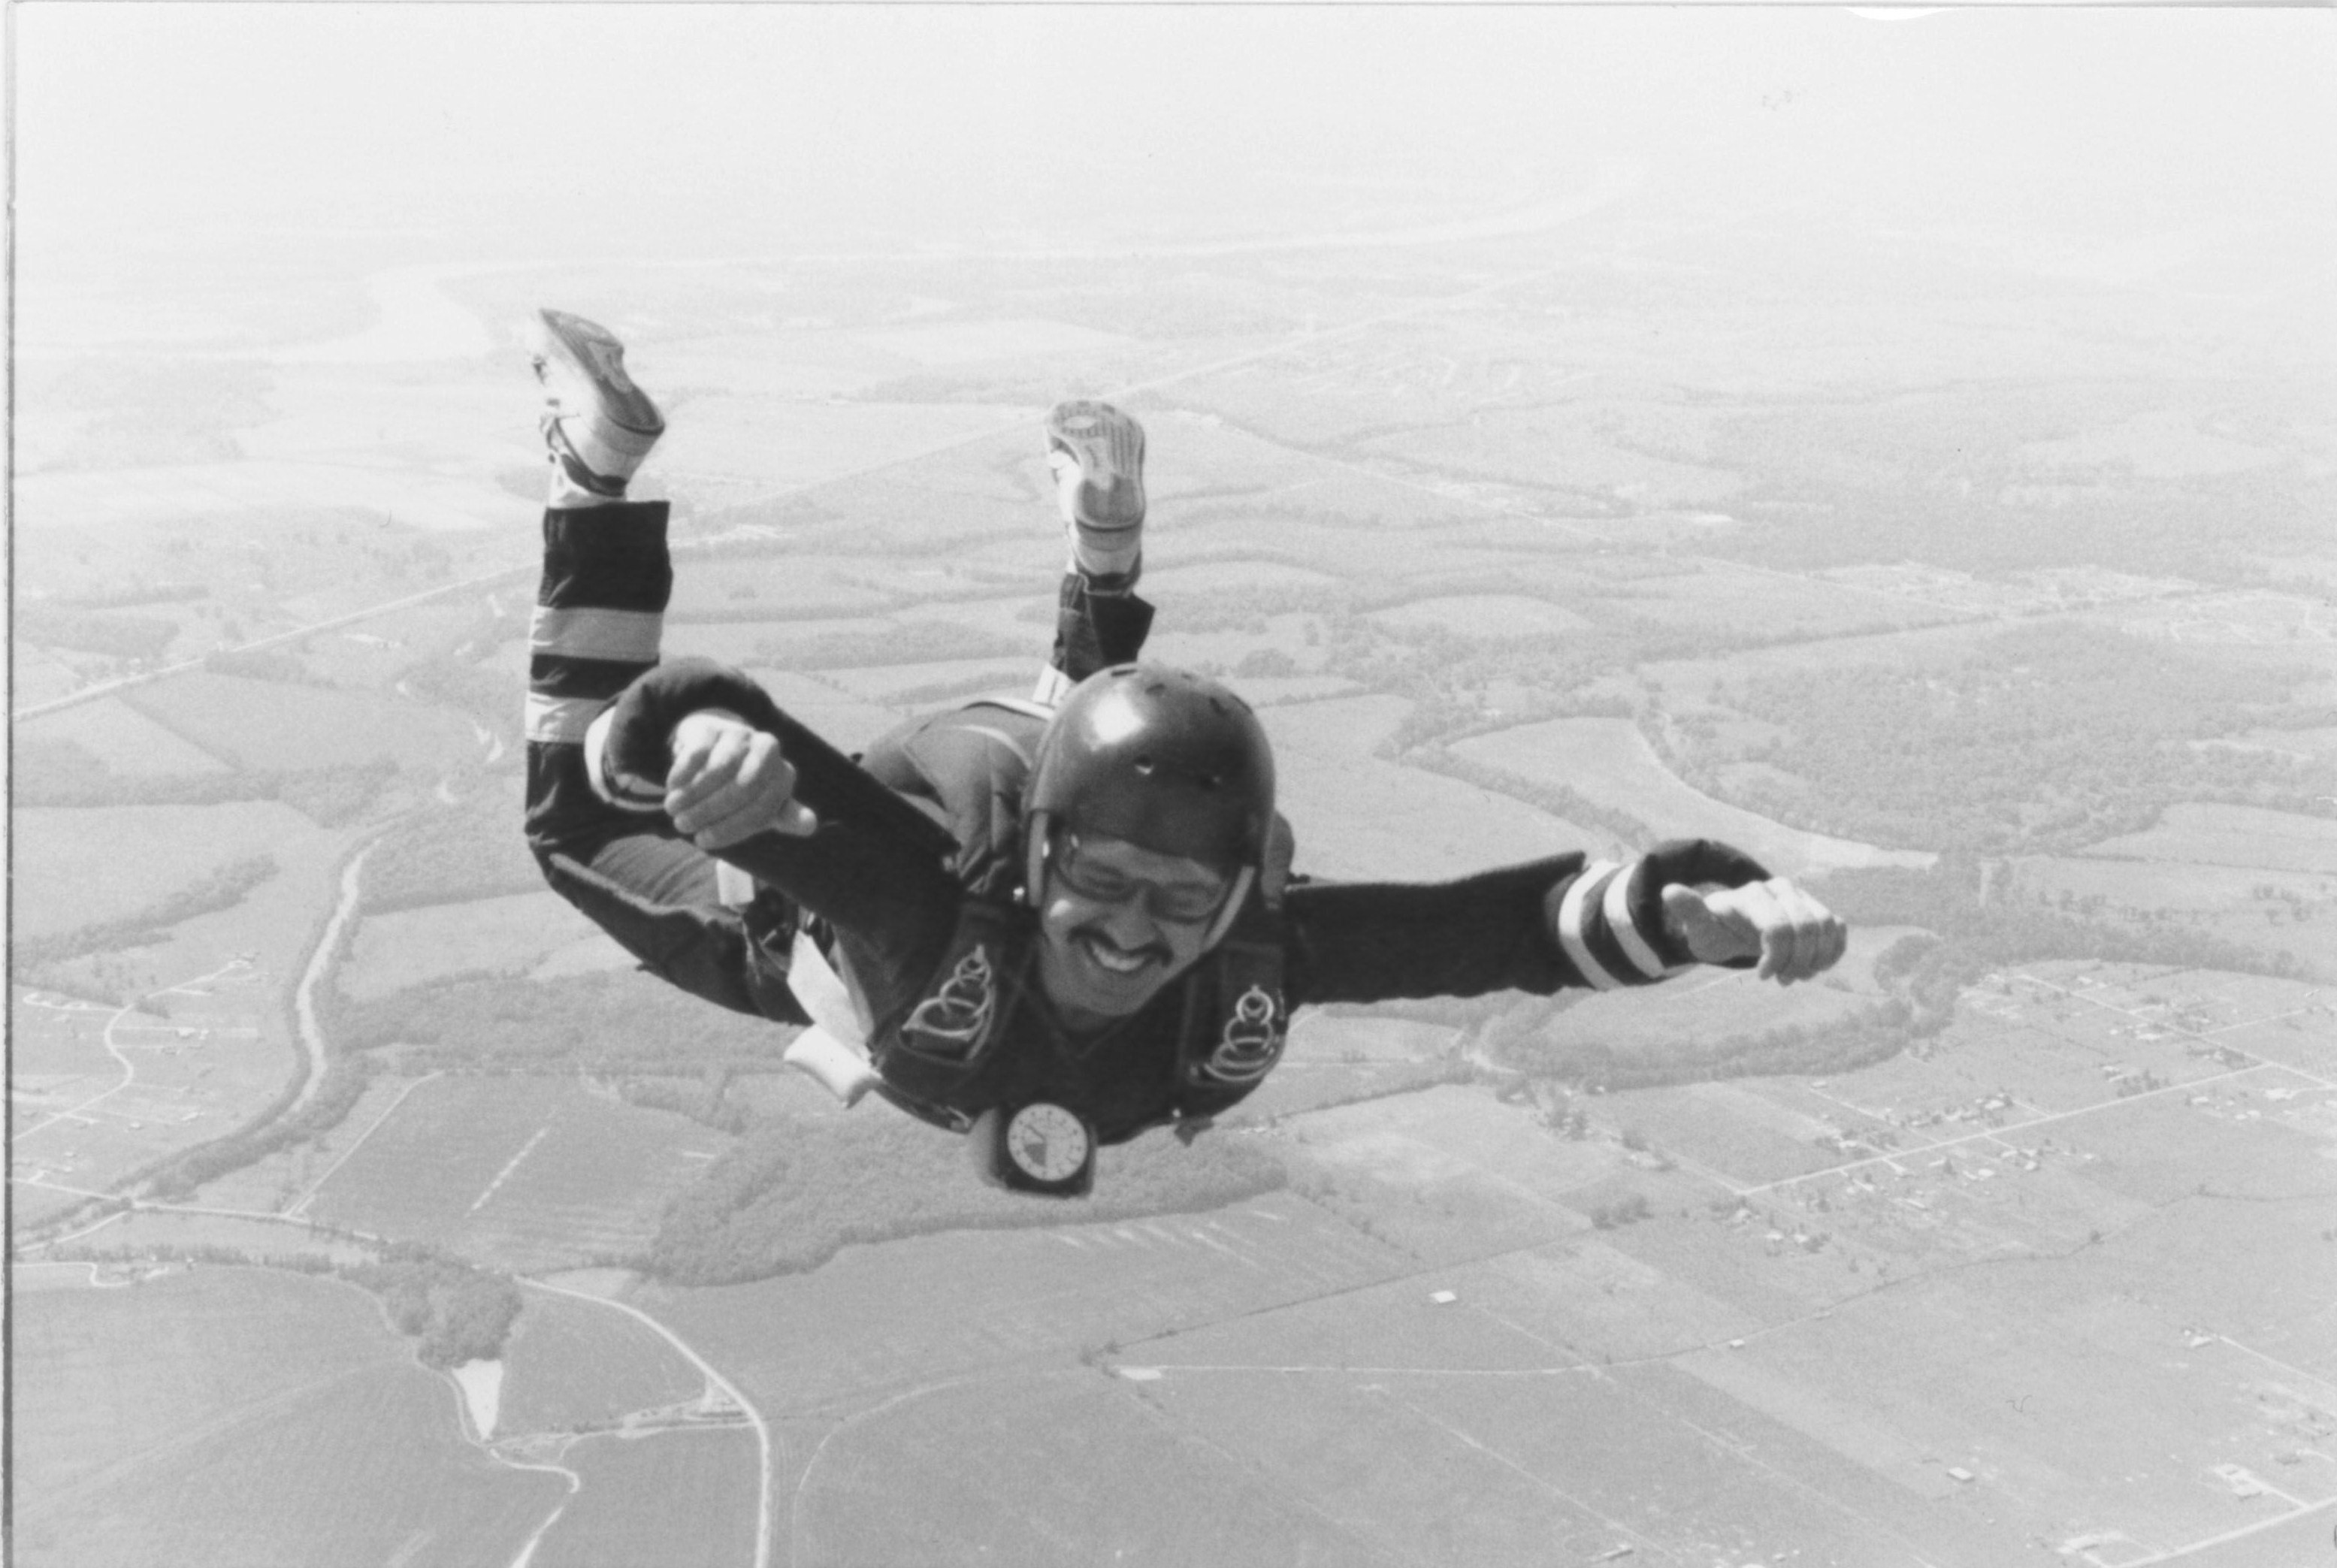 Joseph Blackstone having fun at 4500 feet.